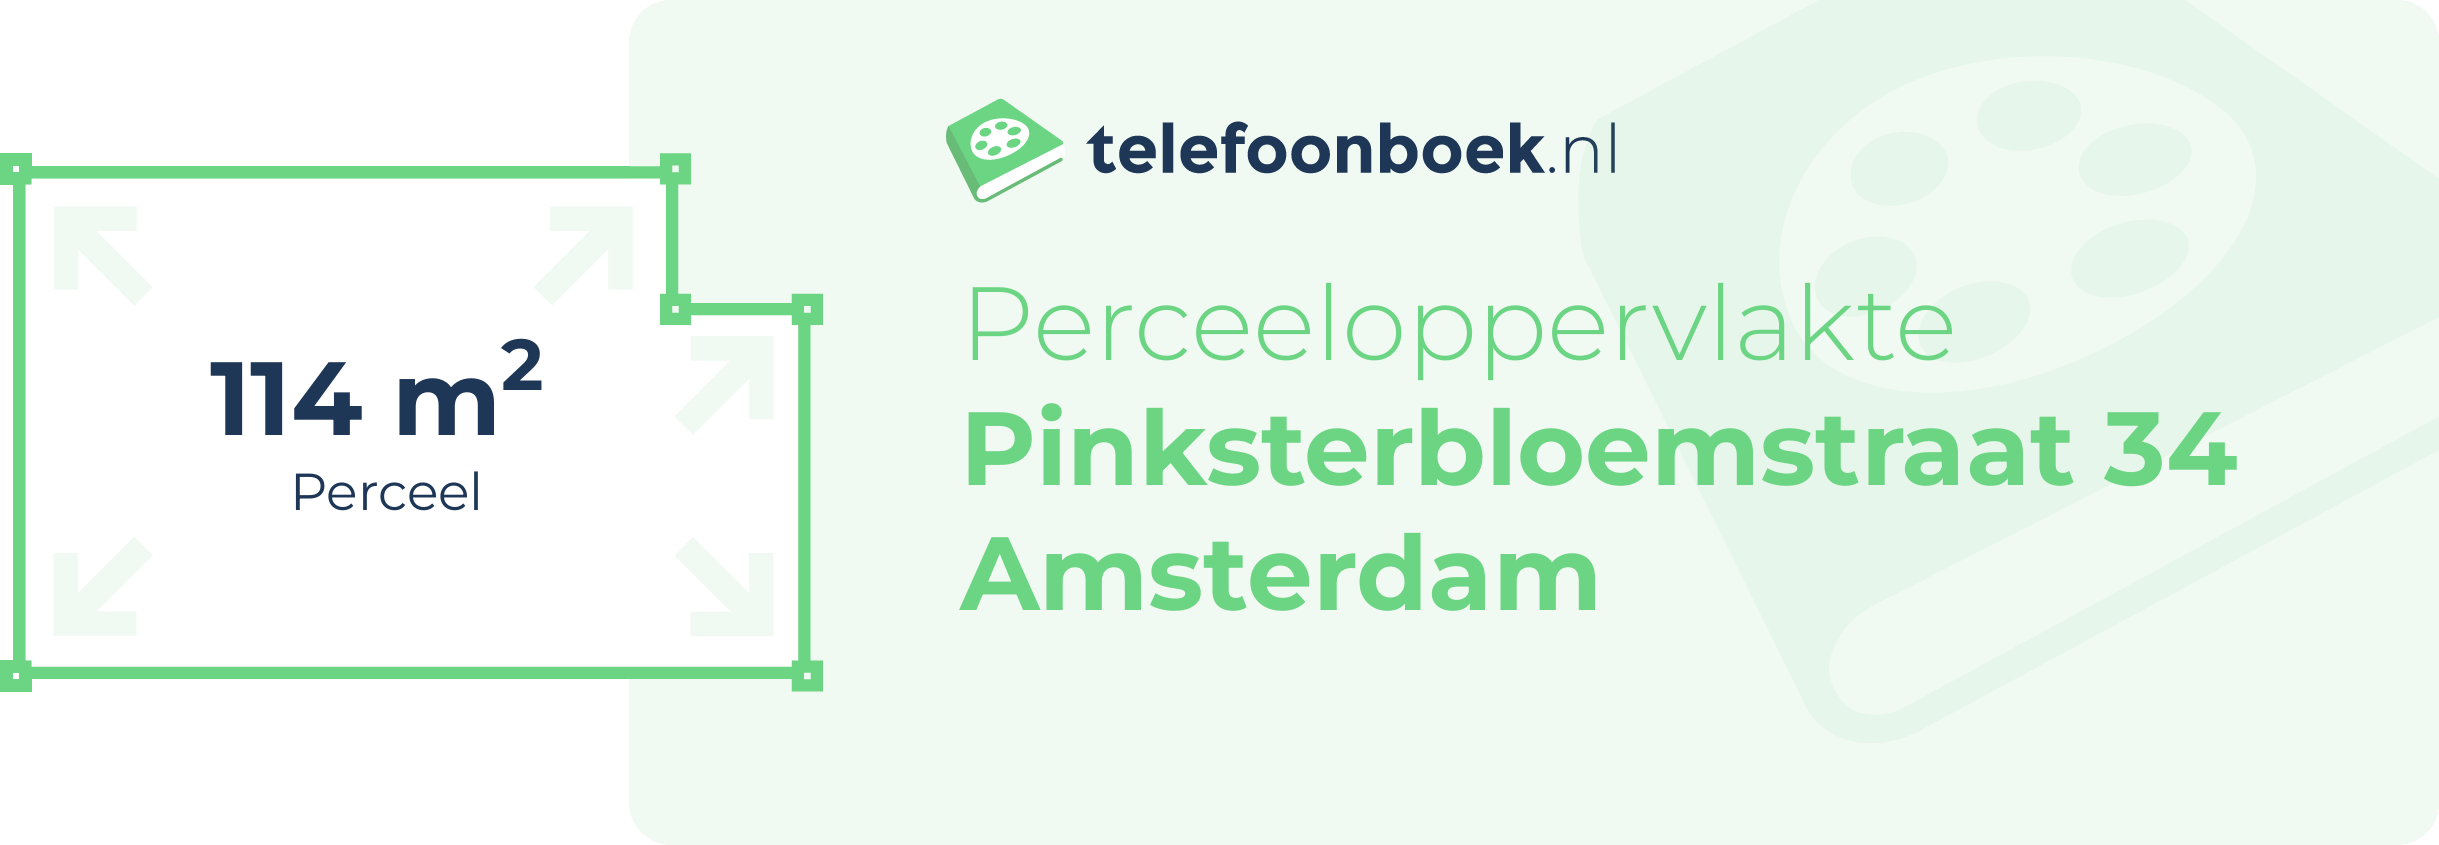 Perceeloppervlakte Pinksterbloemstraat 34 Amsterdam